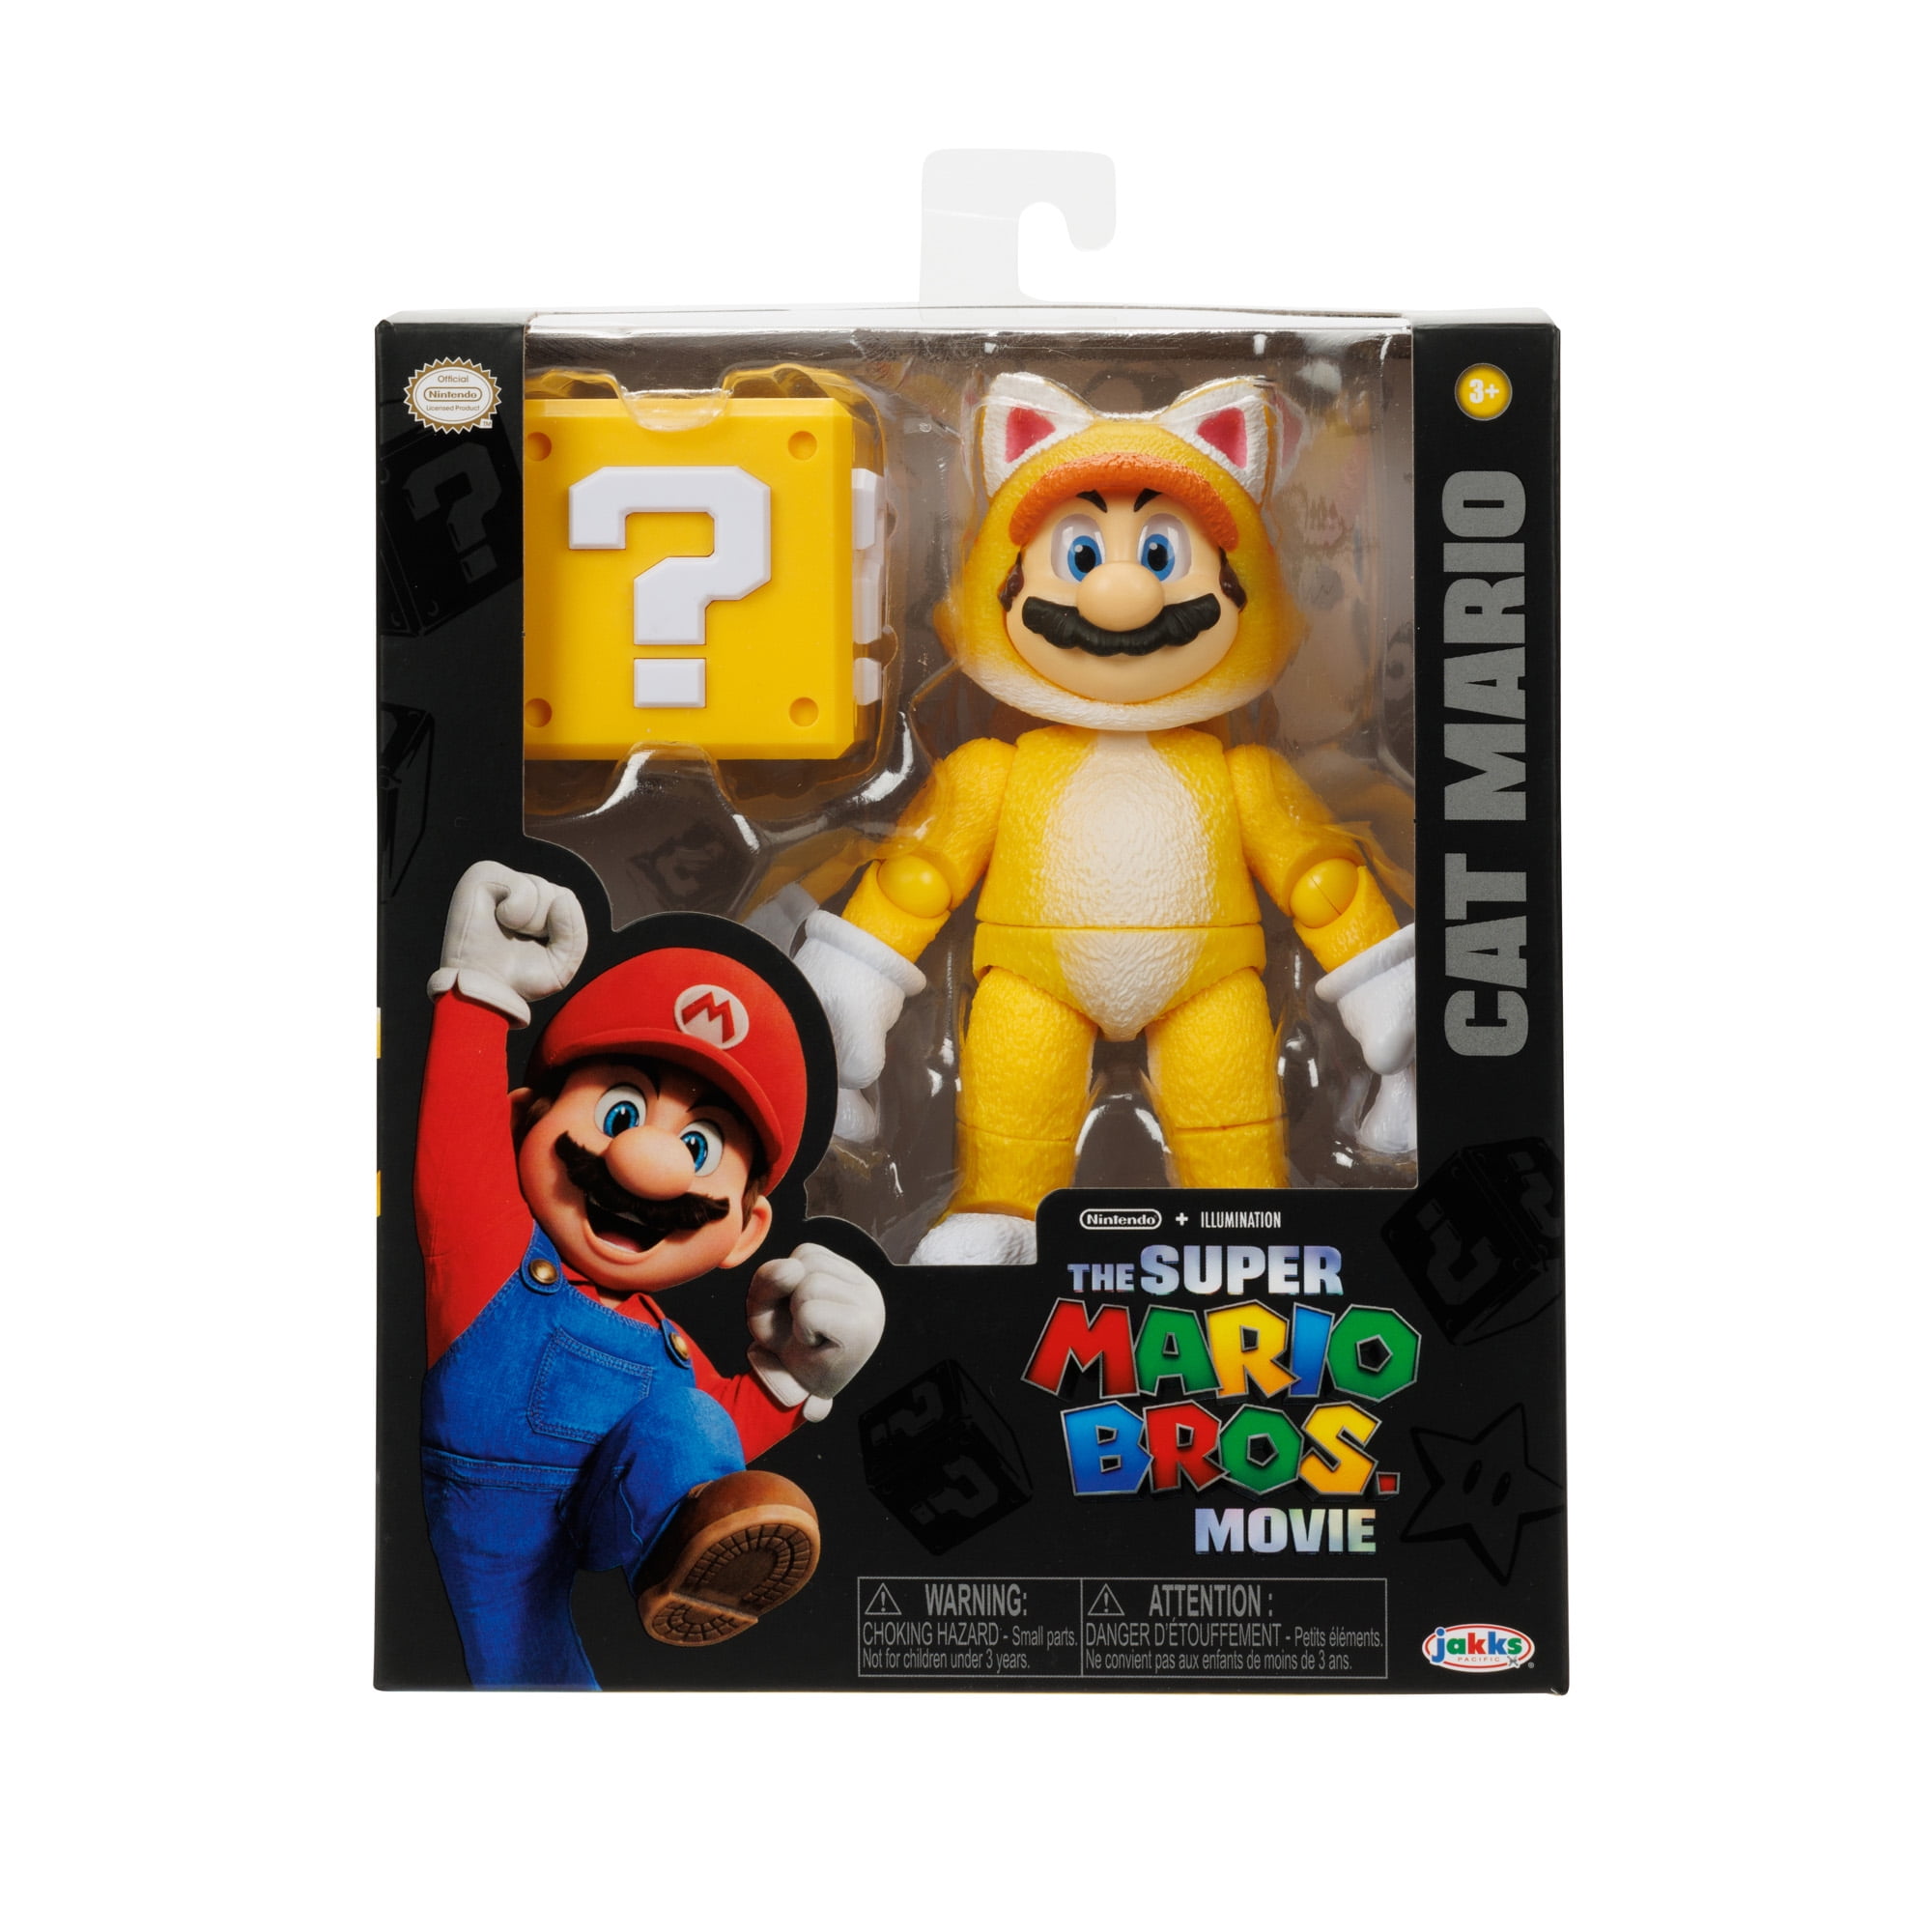 Super Mario Cube Box w/8